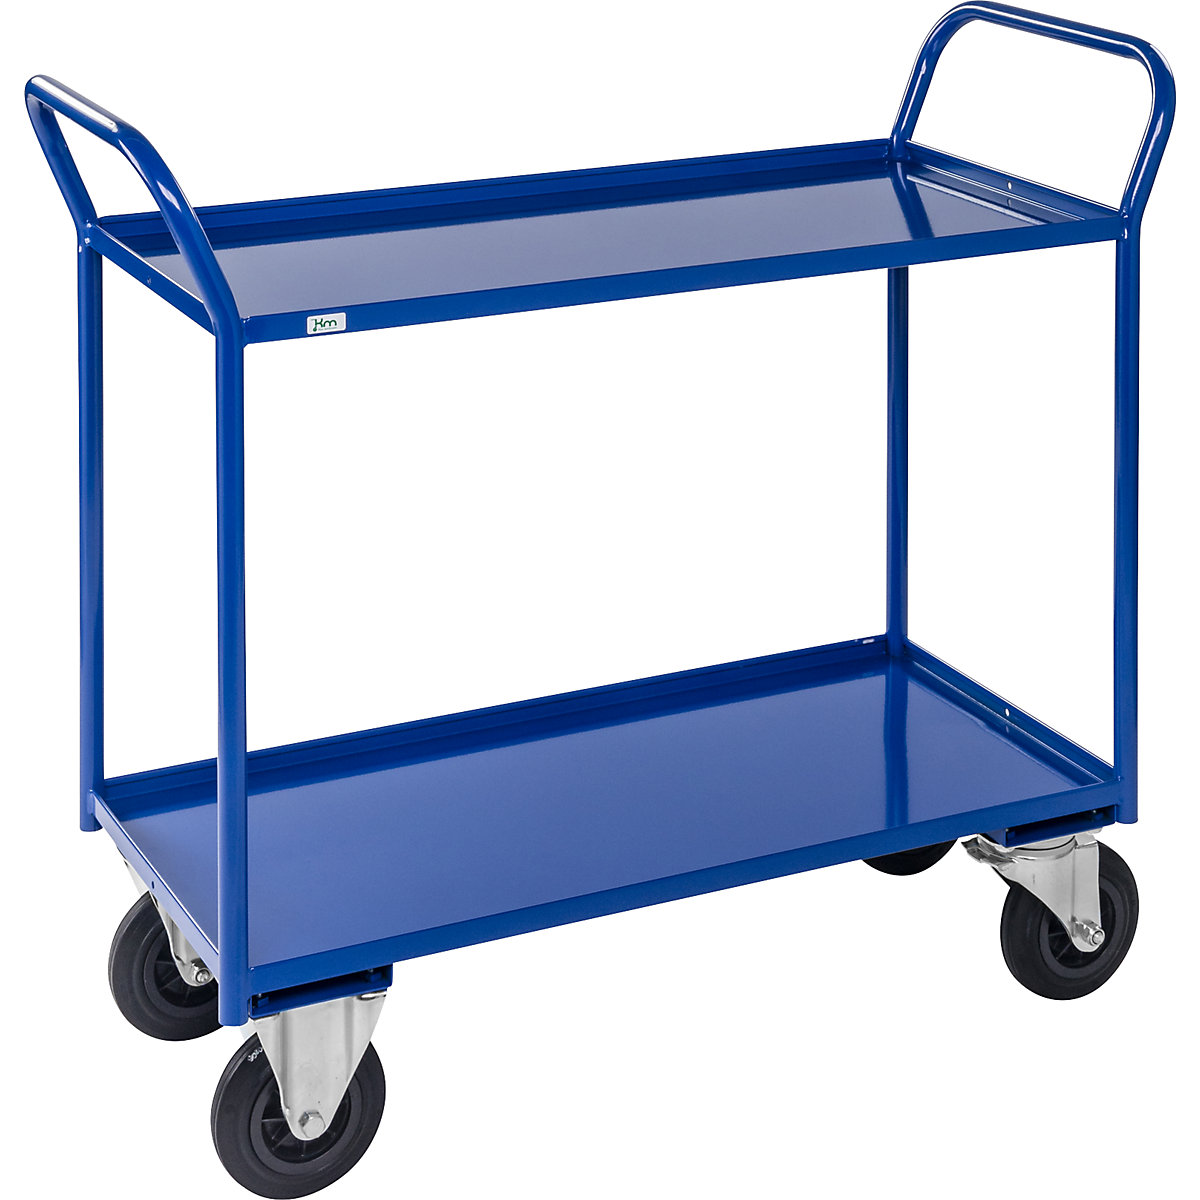 Stolový vozík KM41 – Kongamek, 2 etáže se zvýšenou hranou, d x š x v 1080 x 450 x 1000 mm, modrá, 2 otočná kola s brzdou, 2 pevná kola, od 5 kusů-5